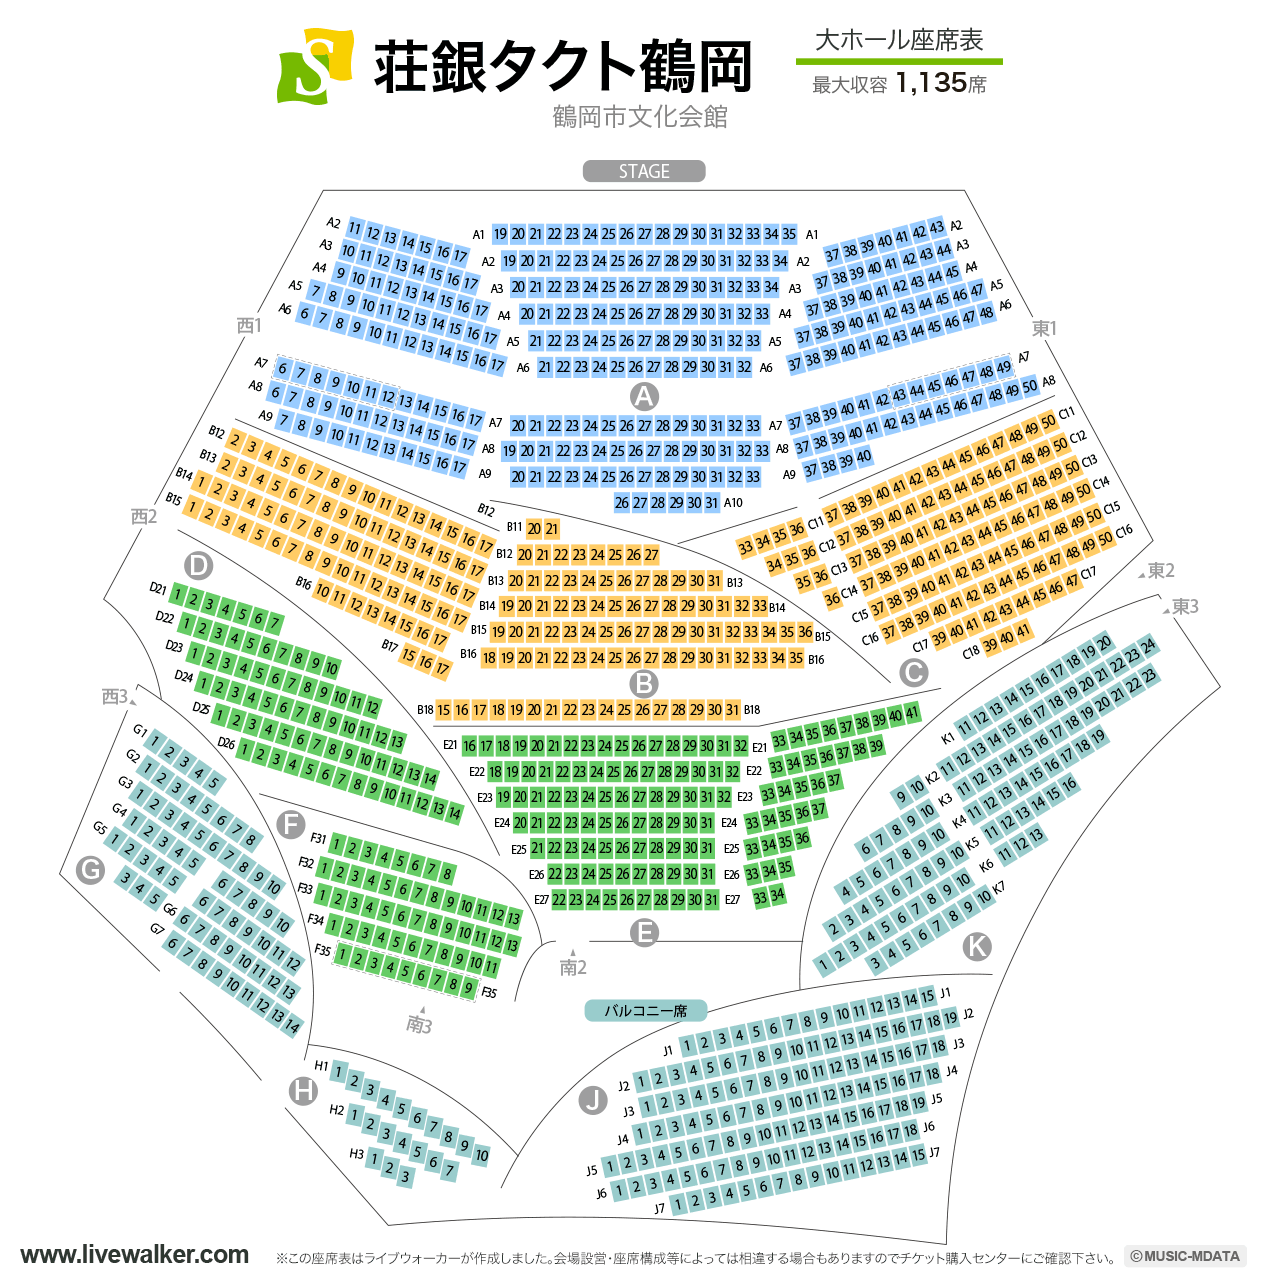 荘銀タクト鶴岡（鶴岡市文化会館）大ホールの座席表